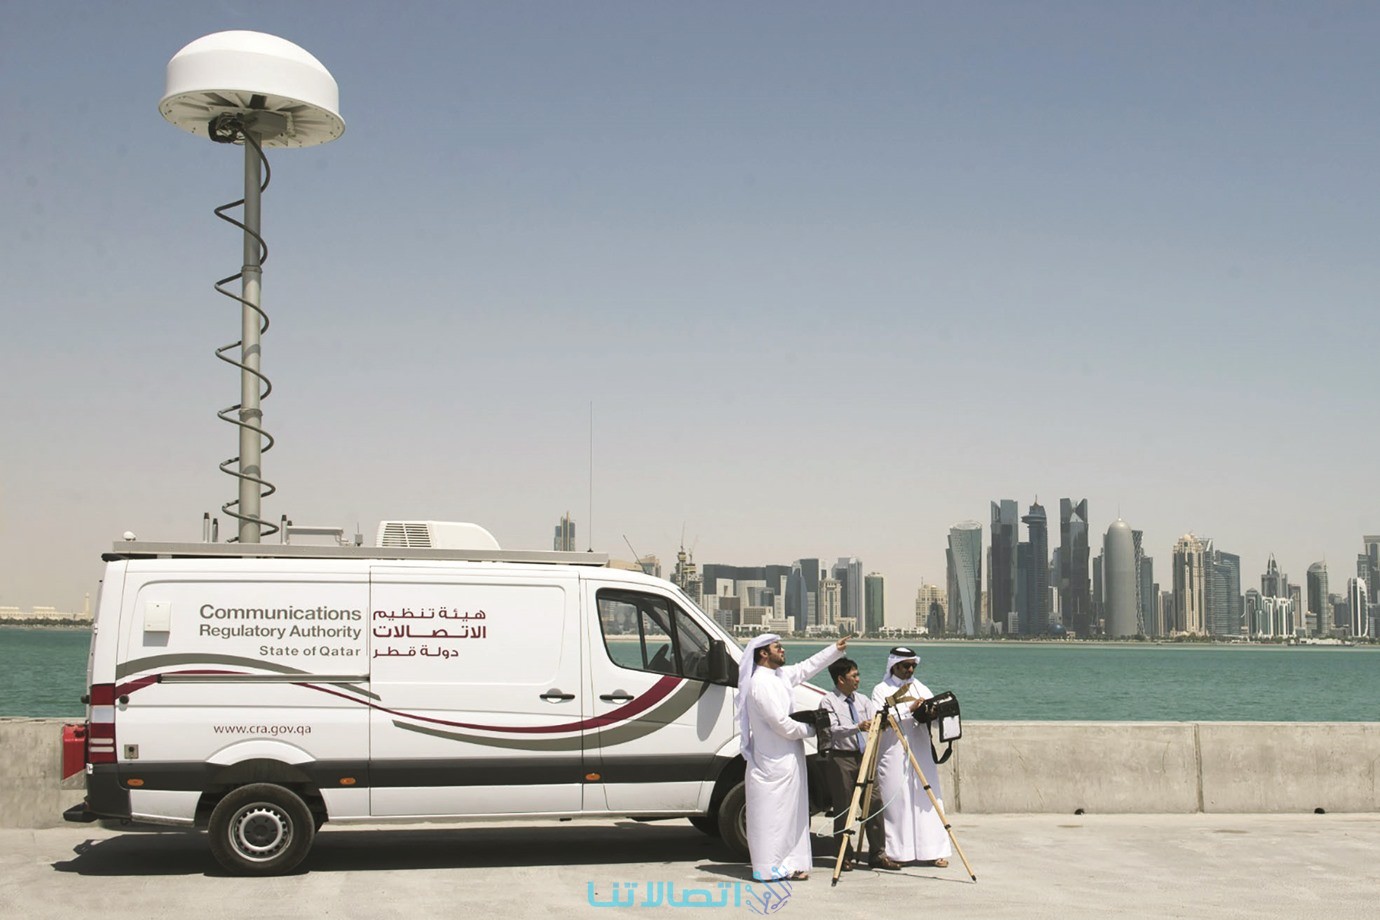 أفضل شركات الاتصالات في قطر حسب تغطية الشبكة